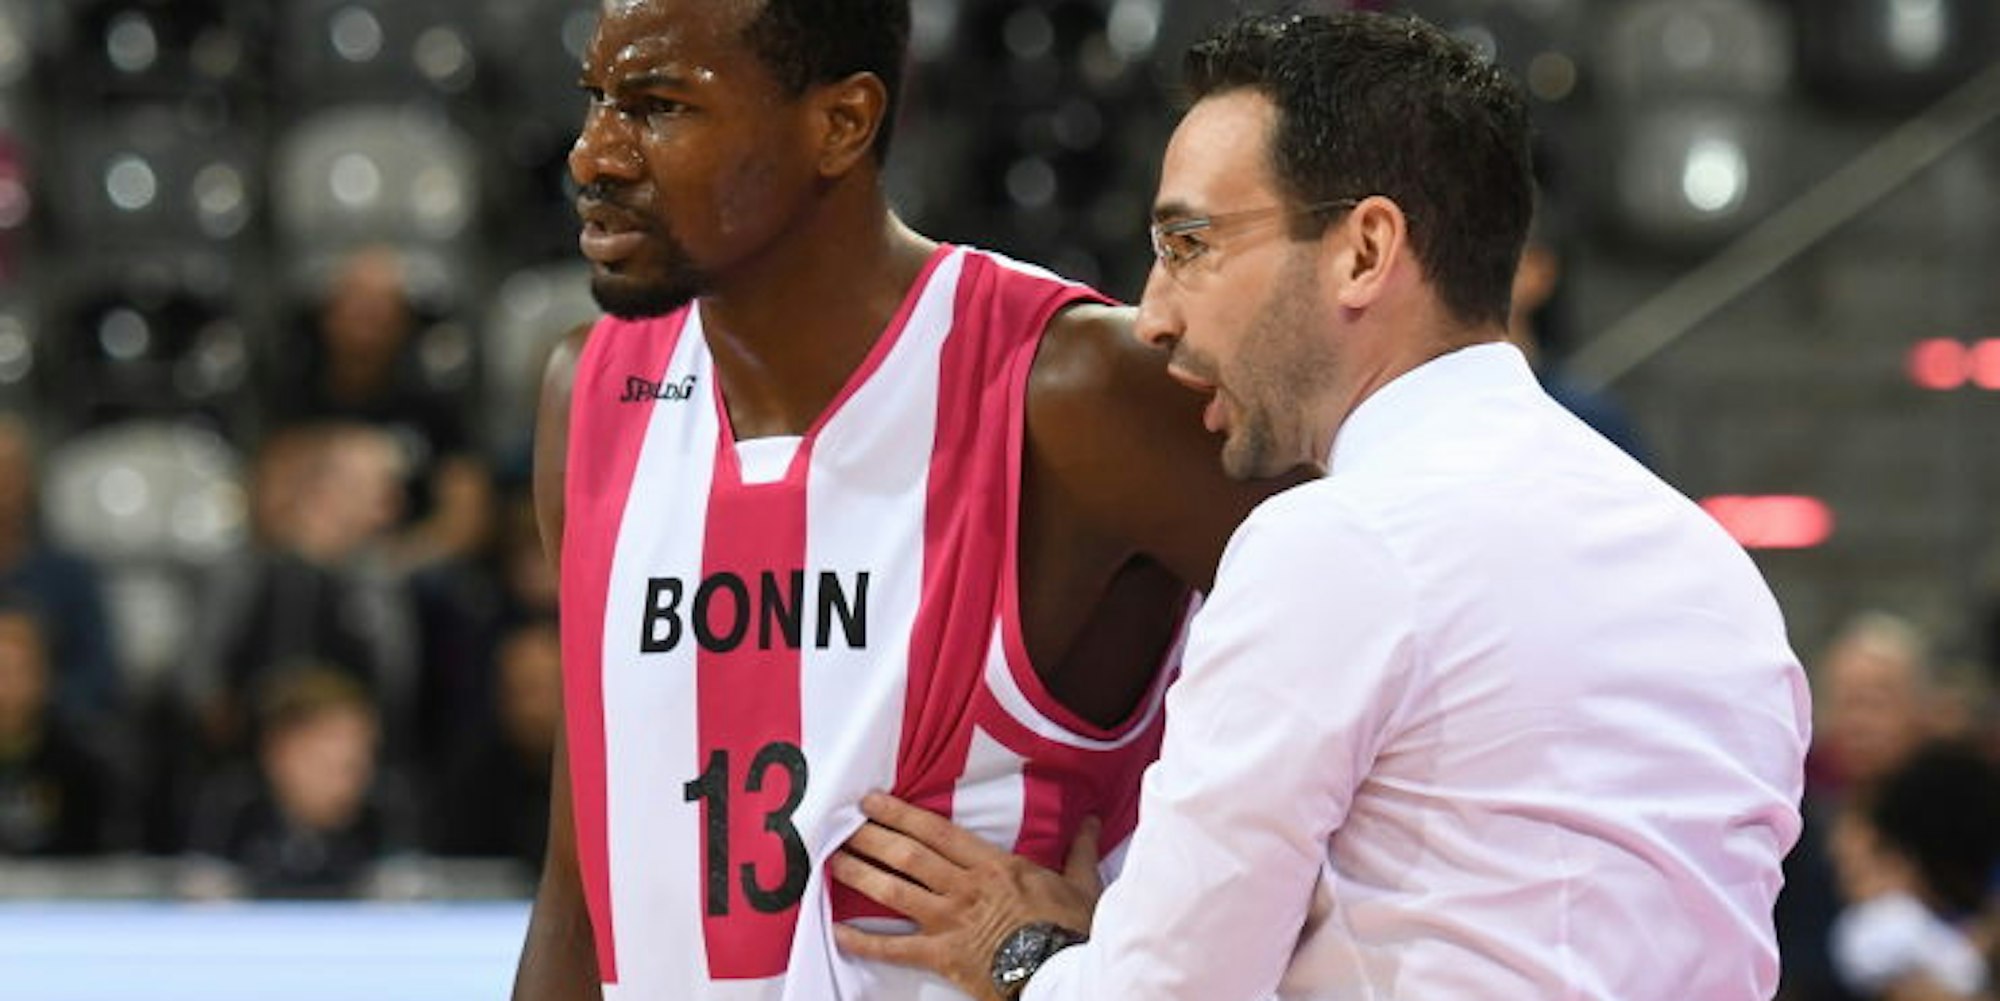 Eher beruhigen denn antreiben muss hier Baskets-Coach Thomas Päch seinen Spieler Yorman Polas Bartolo, der sichtbar unzufrieden wirkt.